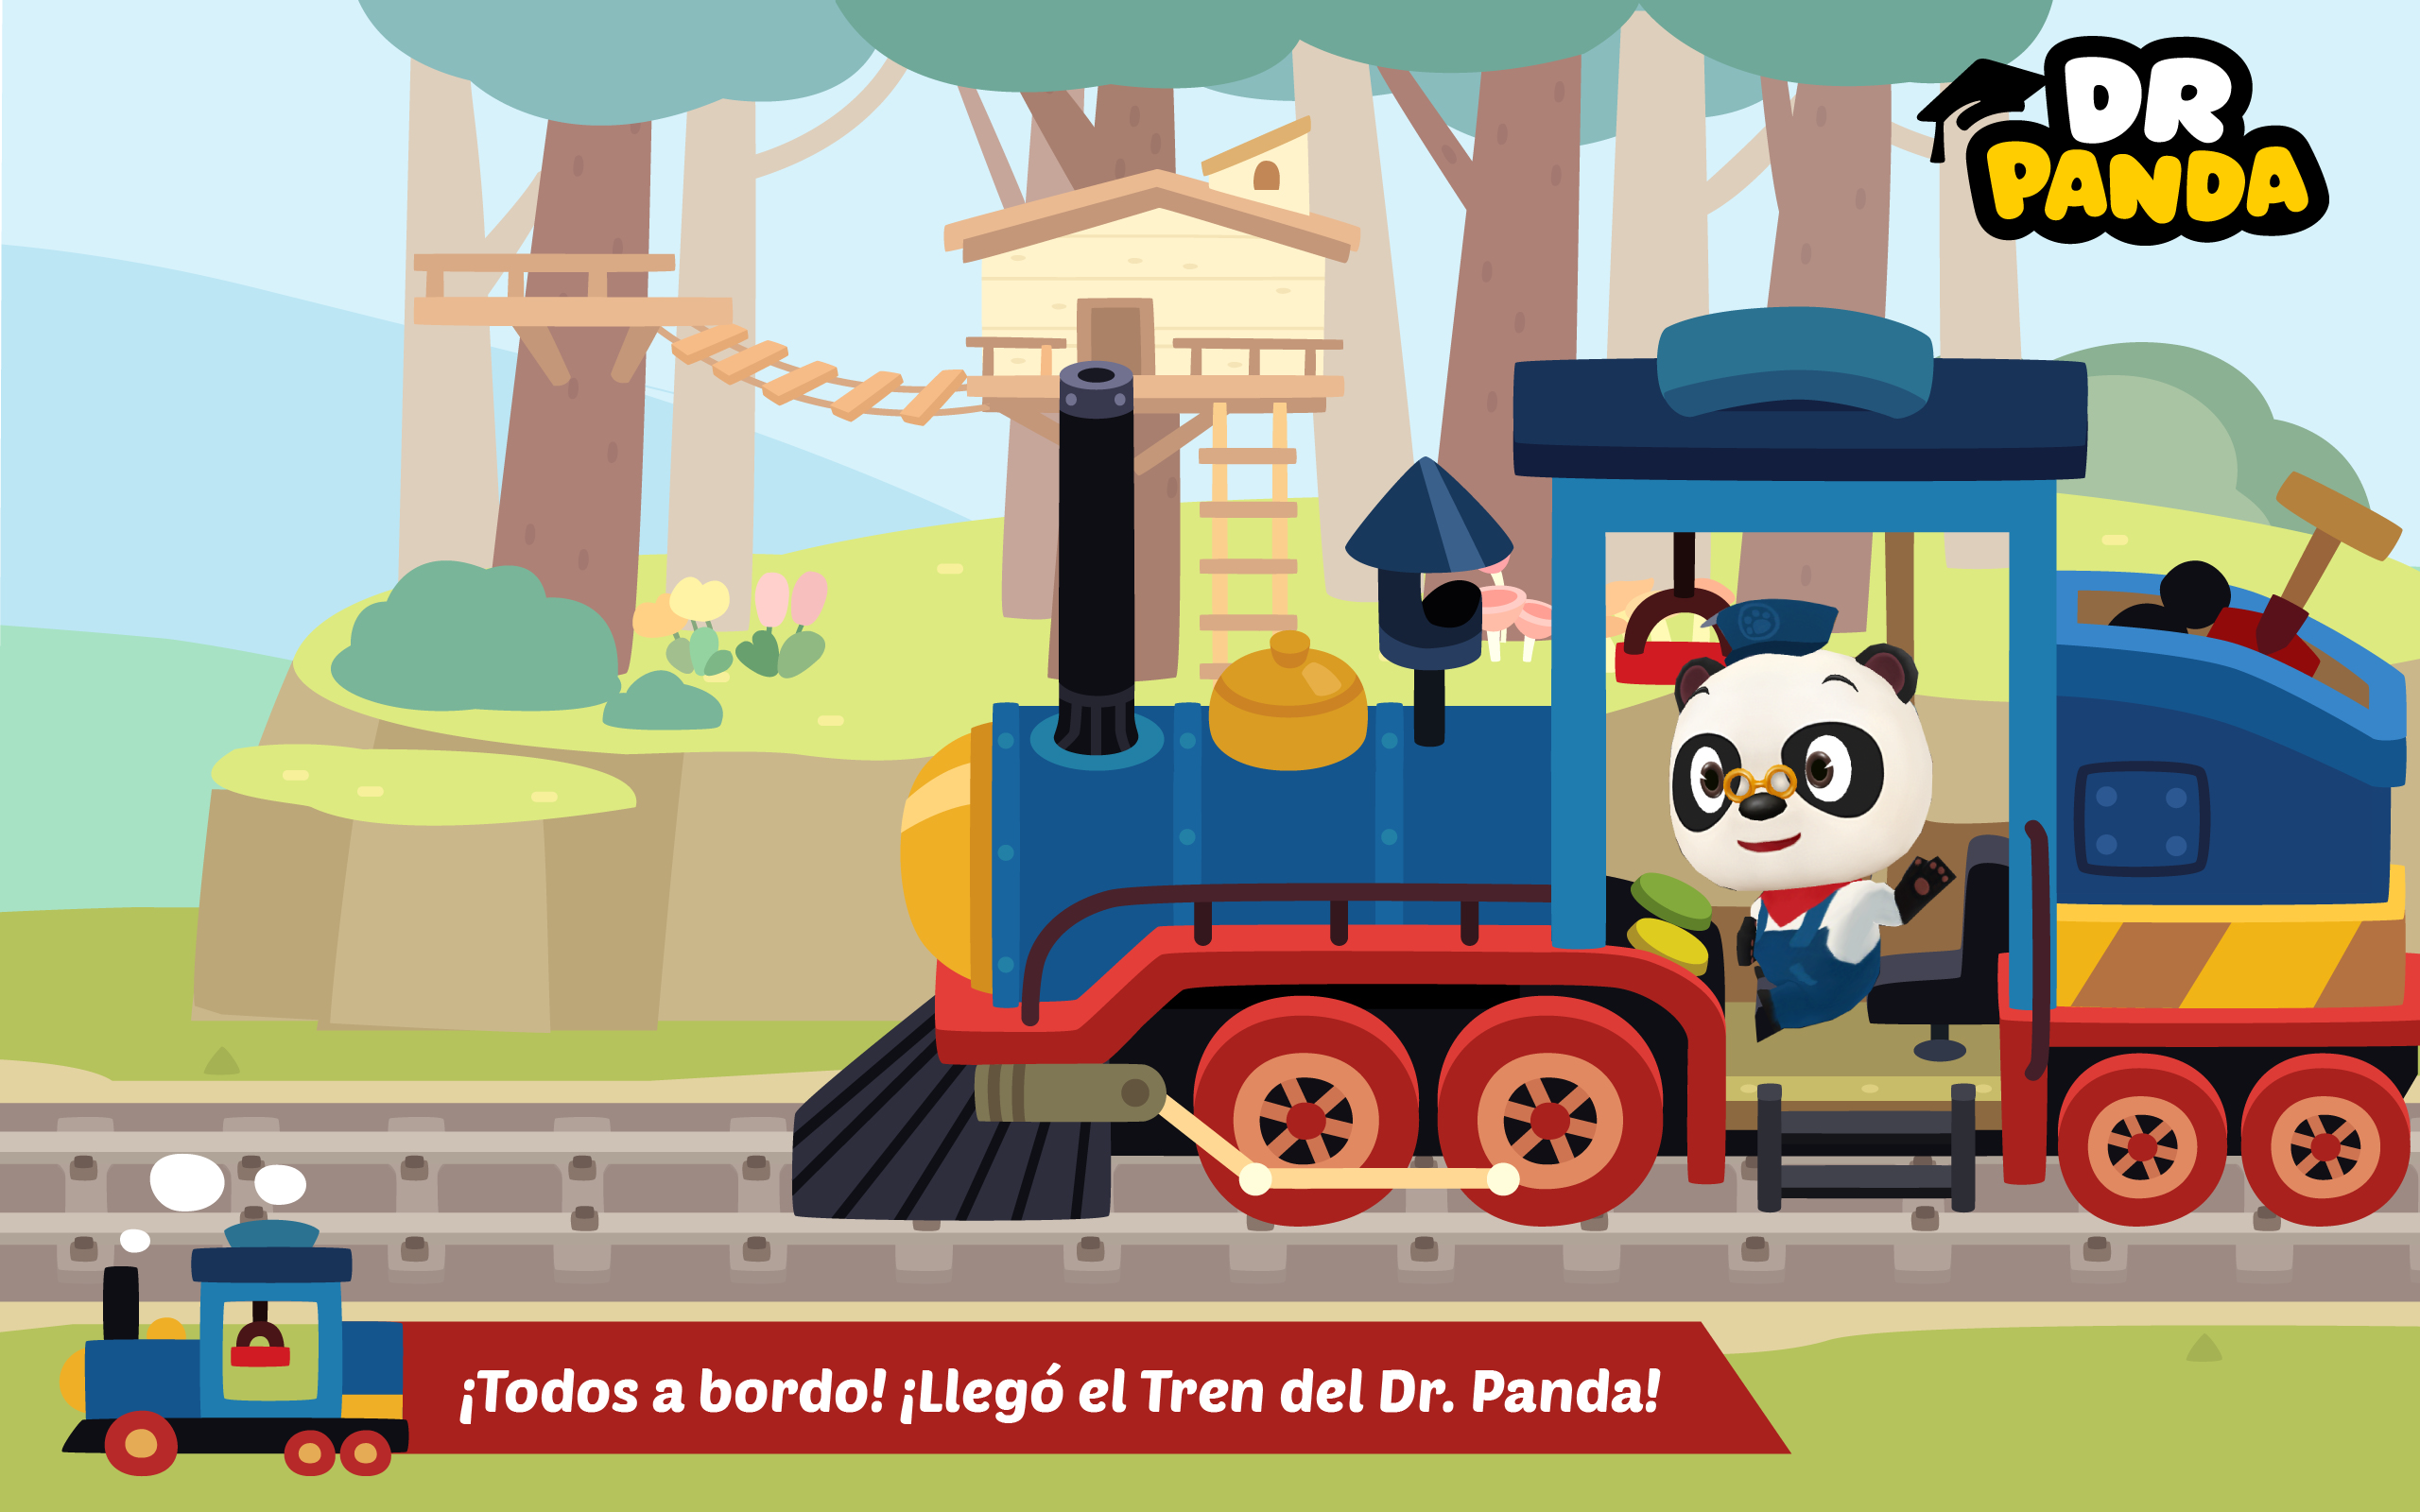 Screenshot 1 of El tren del Dr. Panda 